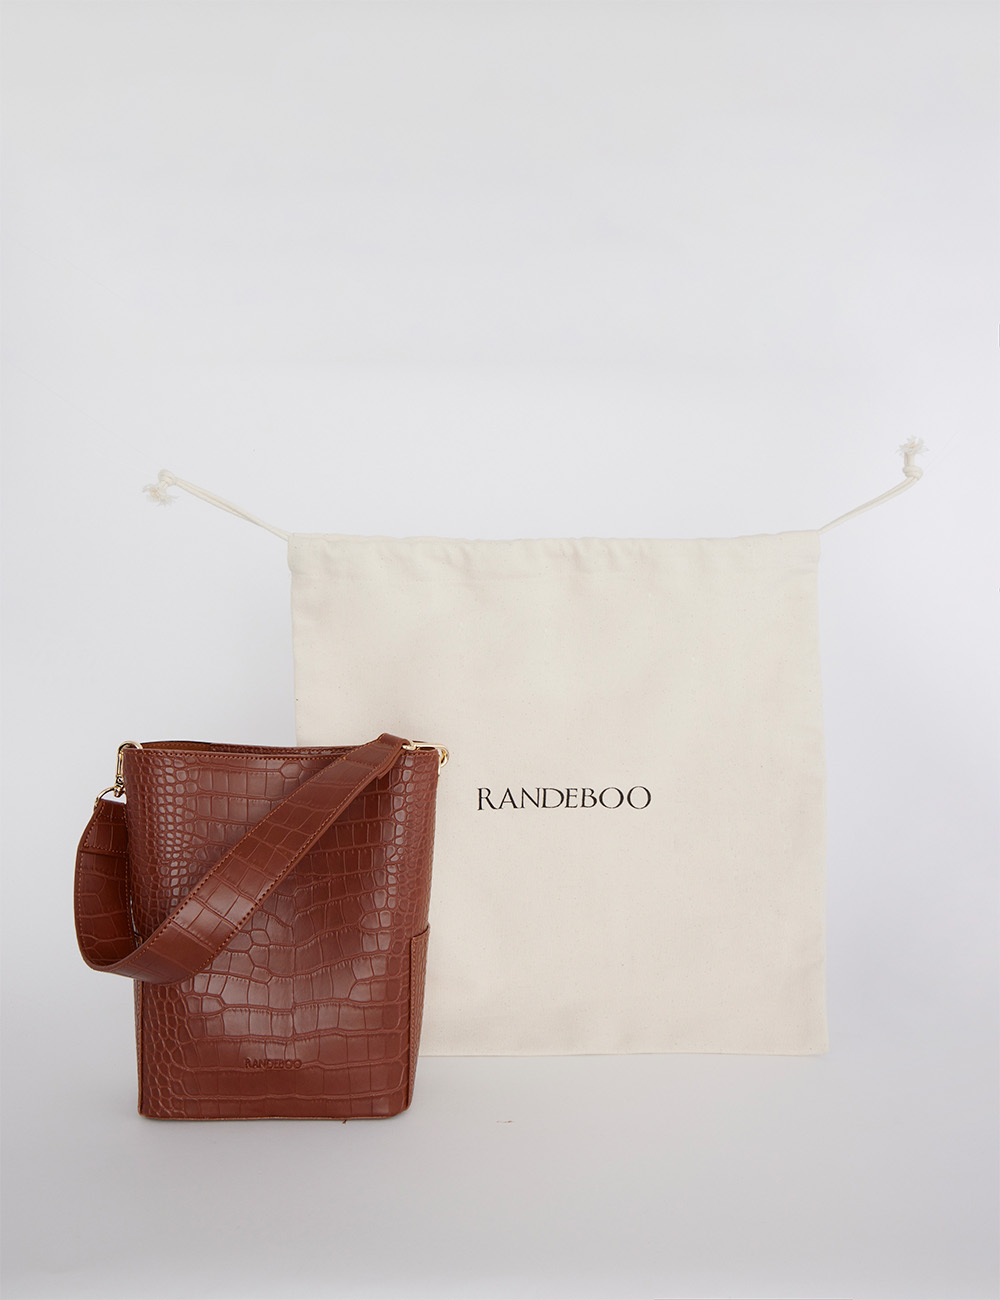 Croco bucket bag - RANDEBOO